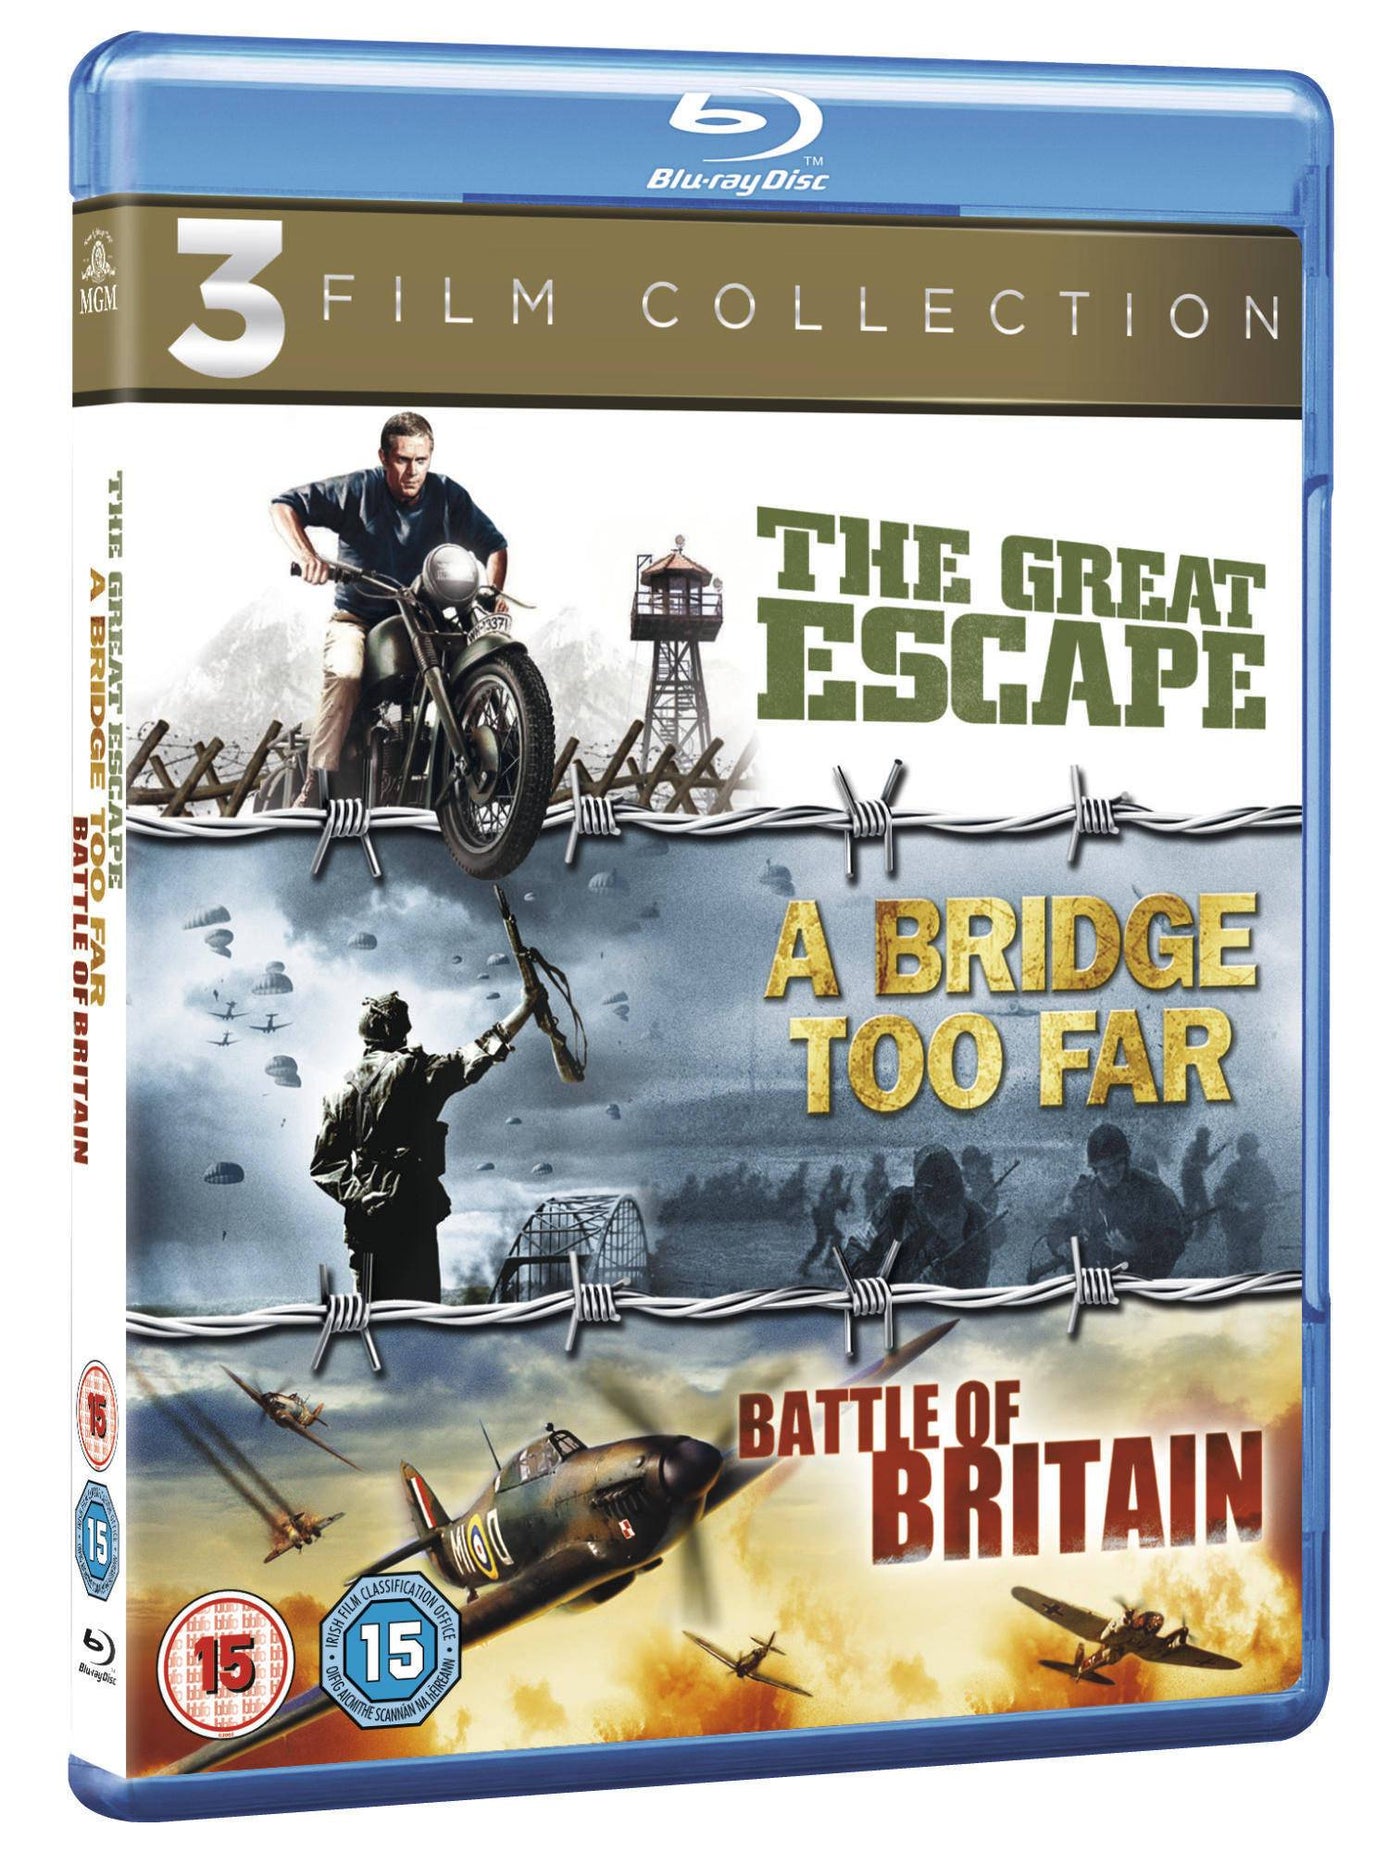 The Great Escape / A Bridge Too Far / Battle of Britain [1963] (Blu-ray)